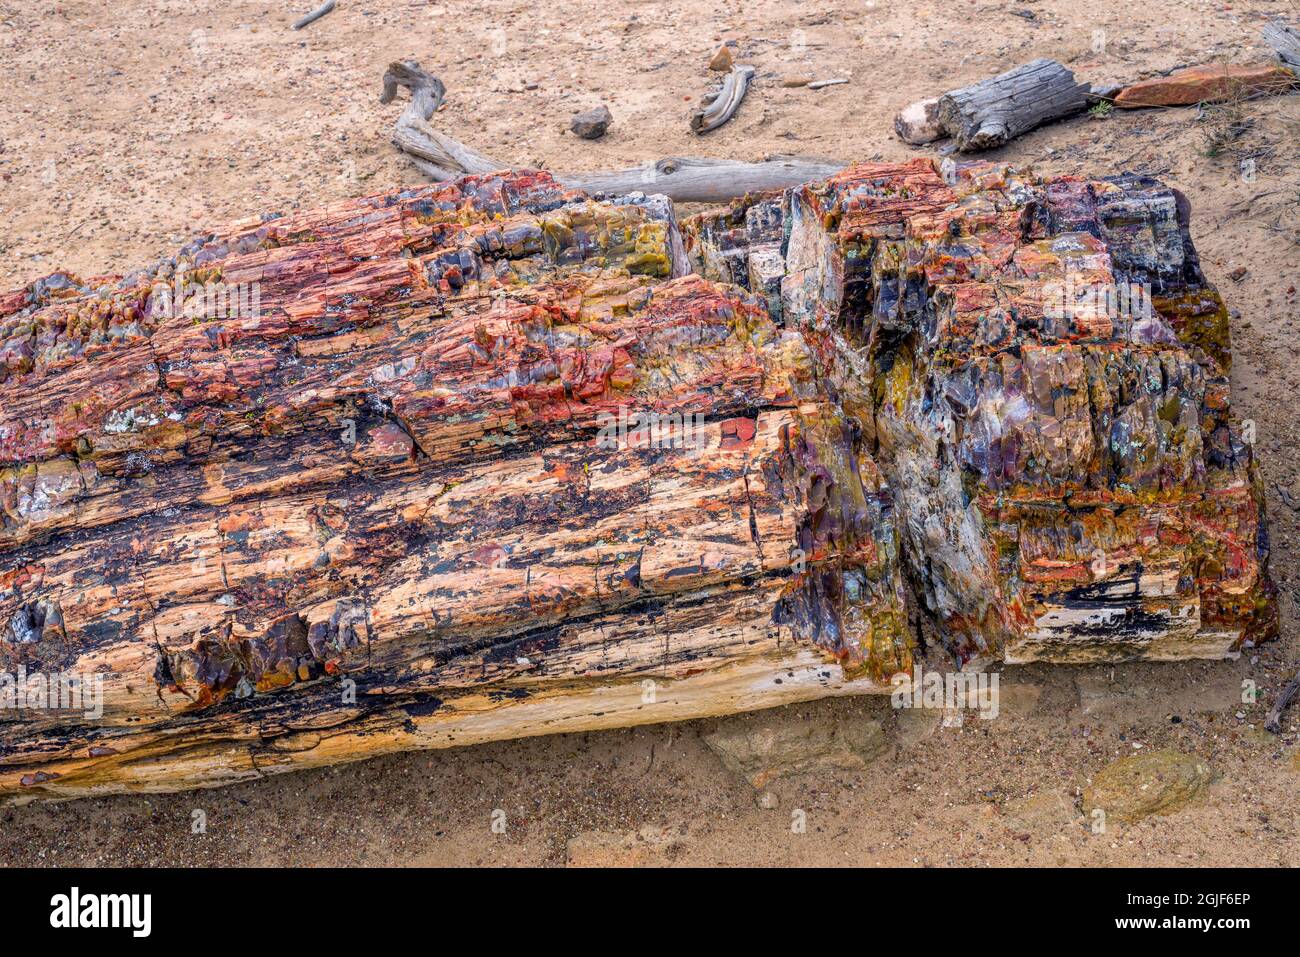 USA, Utah, Escalante Petrified Forest State Park, farbenfrohe Überreste aus versteinertem Holz und umliegende Böden. Stockfoto